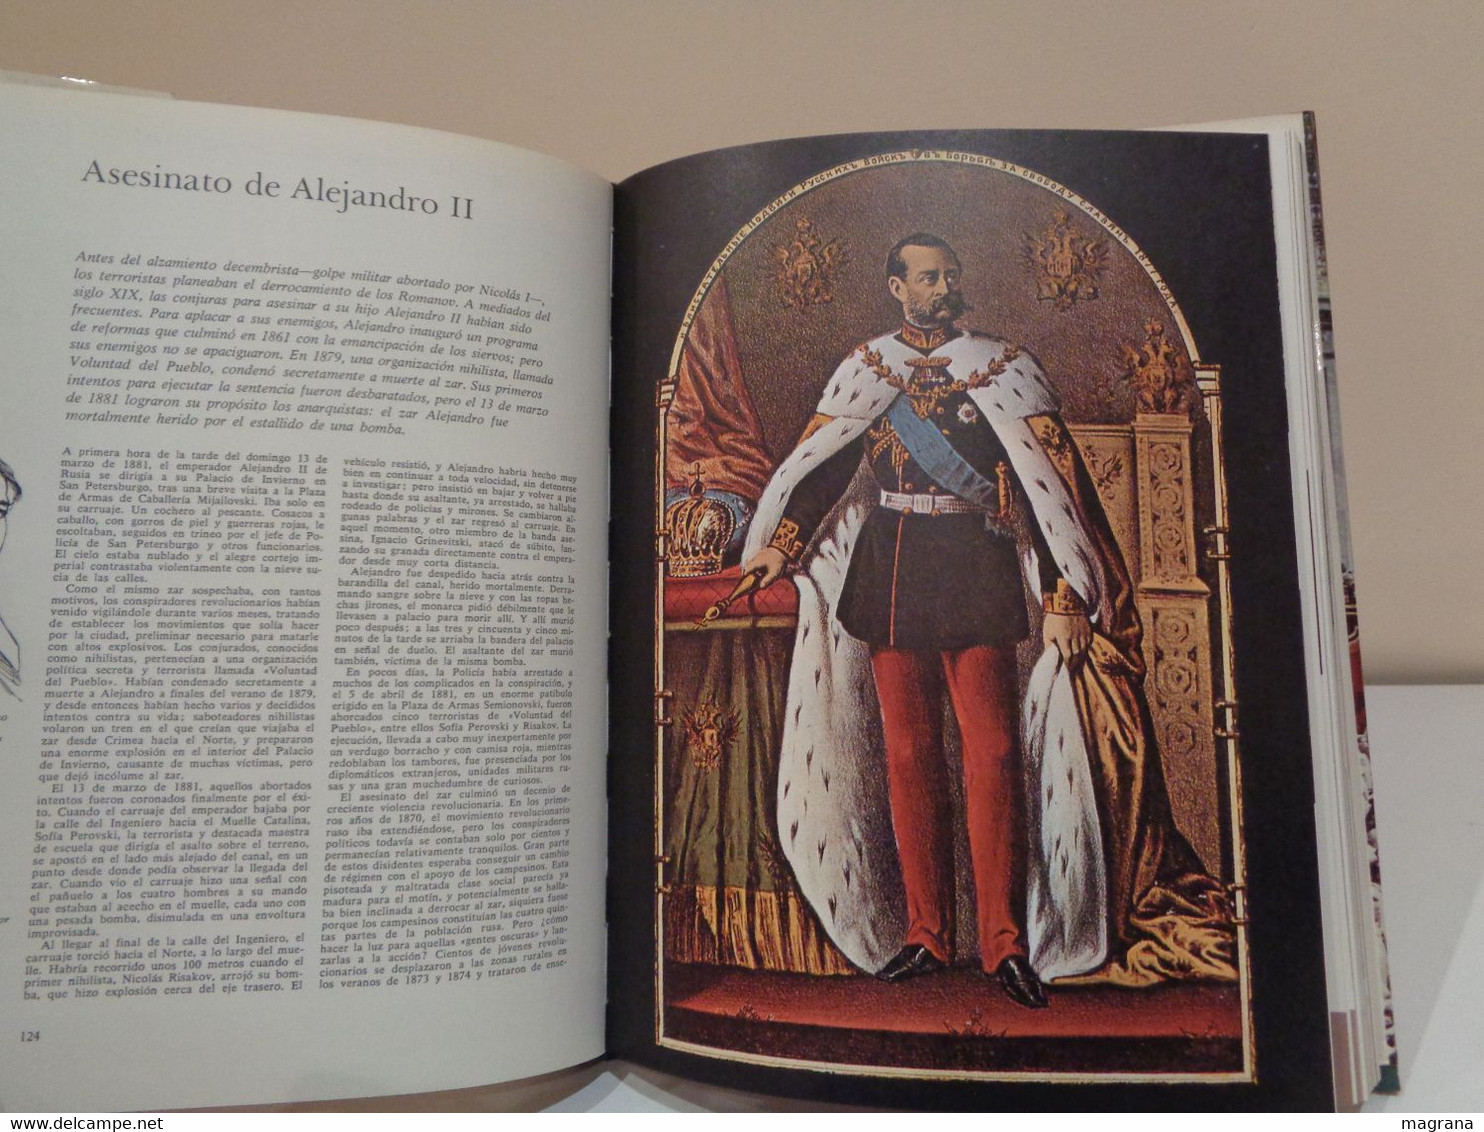 Historia Universal en sus momentos cruciales. Ed. Aguilar. 3 volúmenes. 1970.